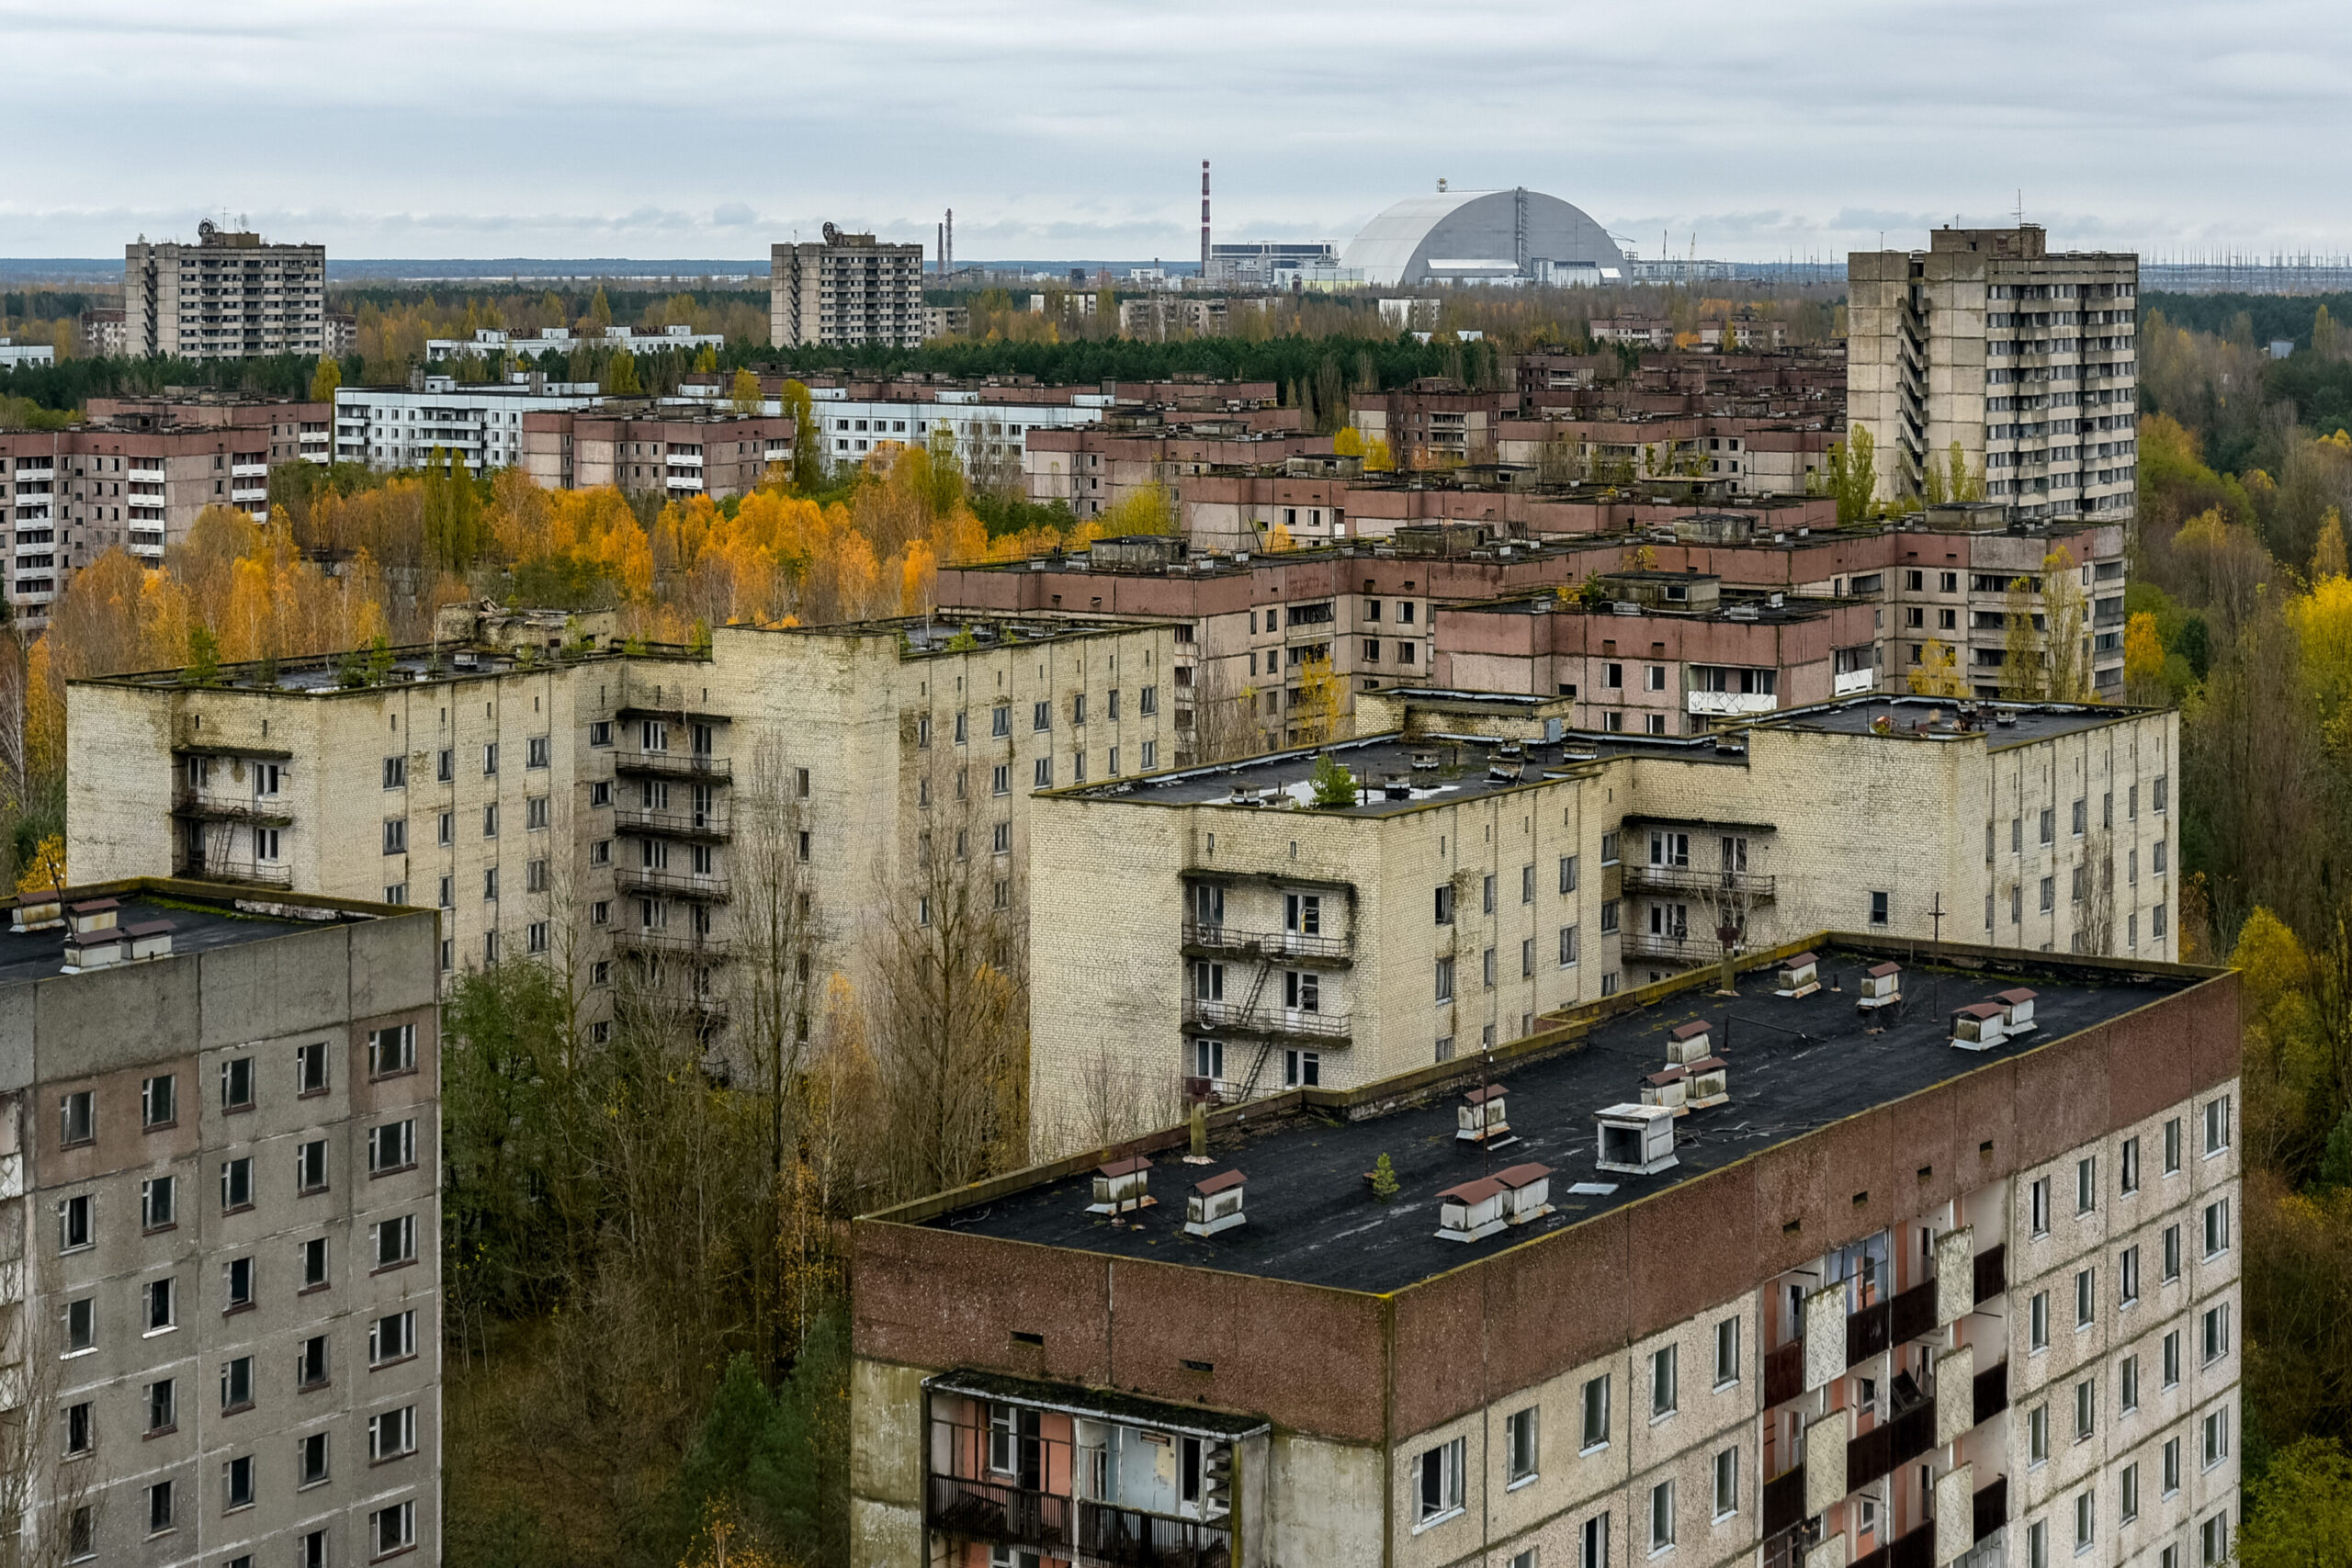 Ubicación de Chernobyl: ¿Dónde se encuentra?